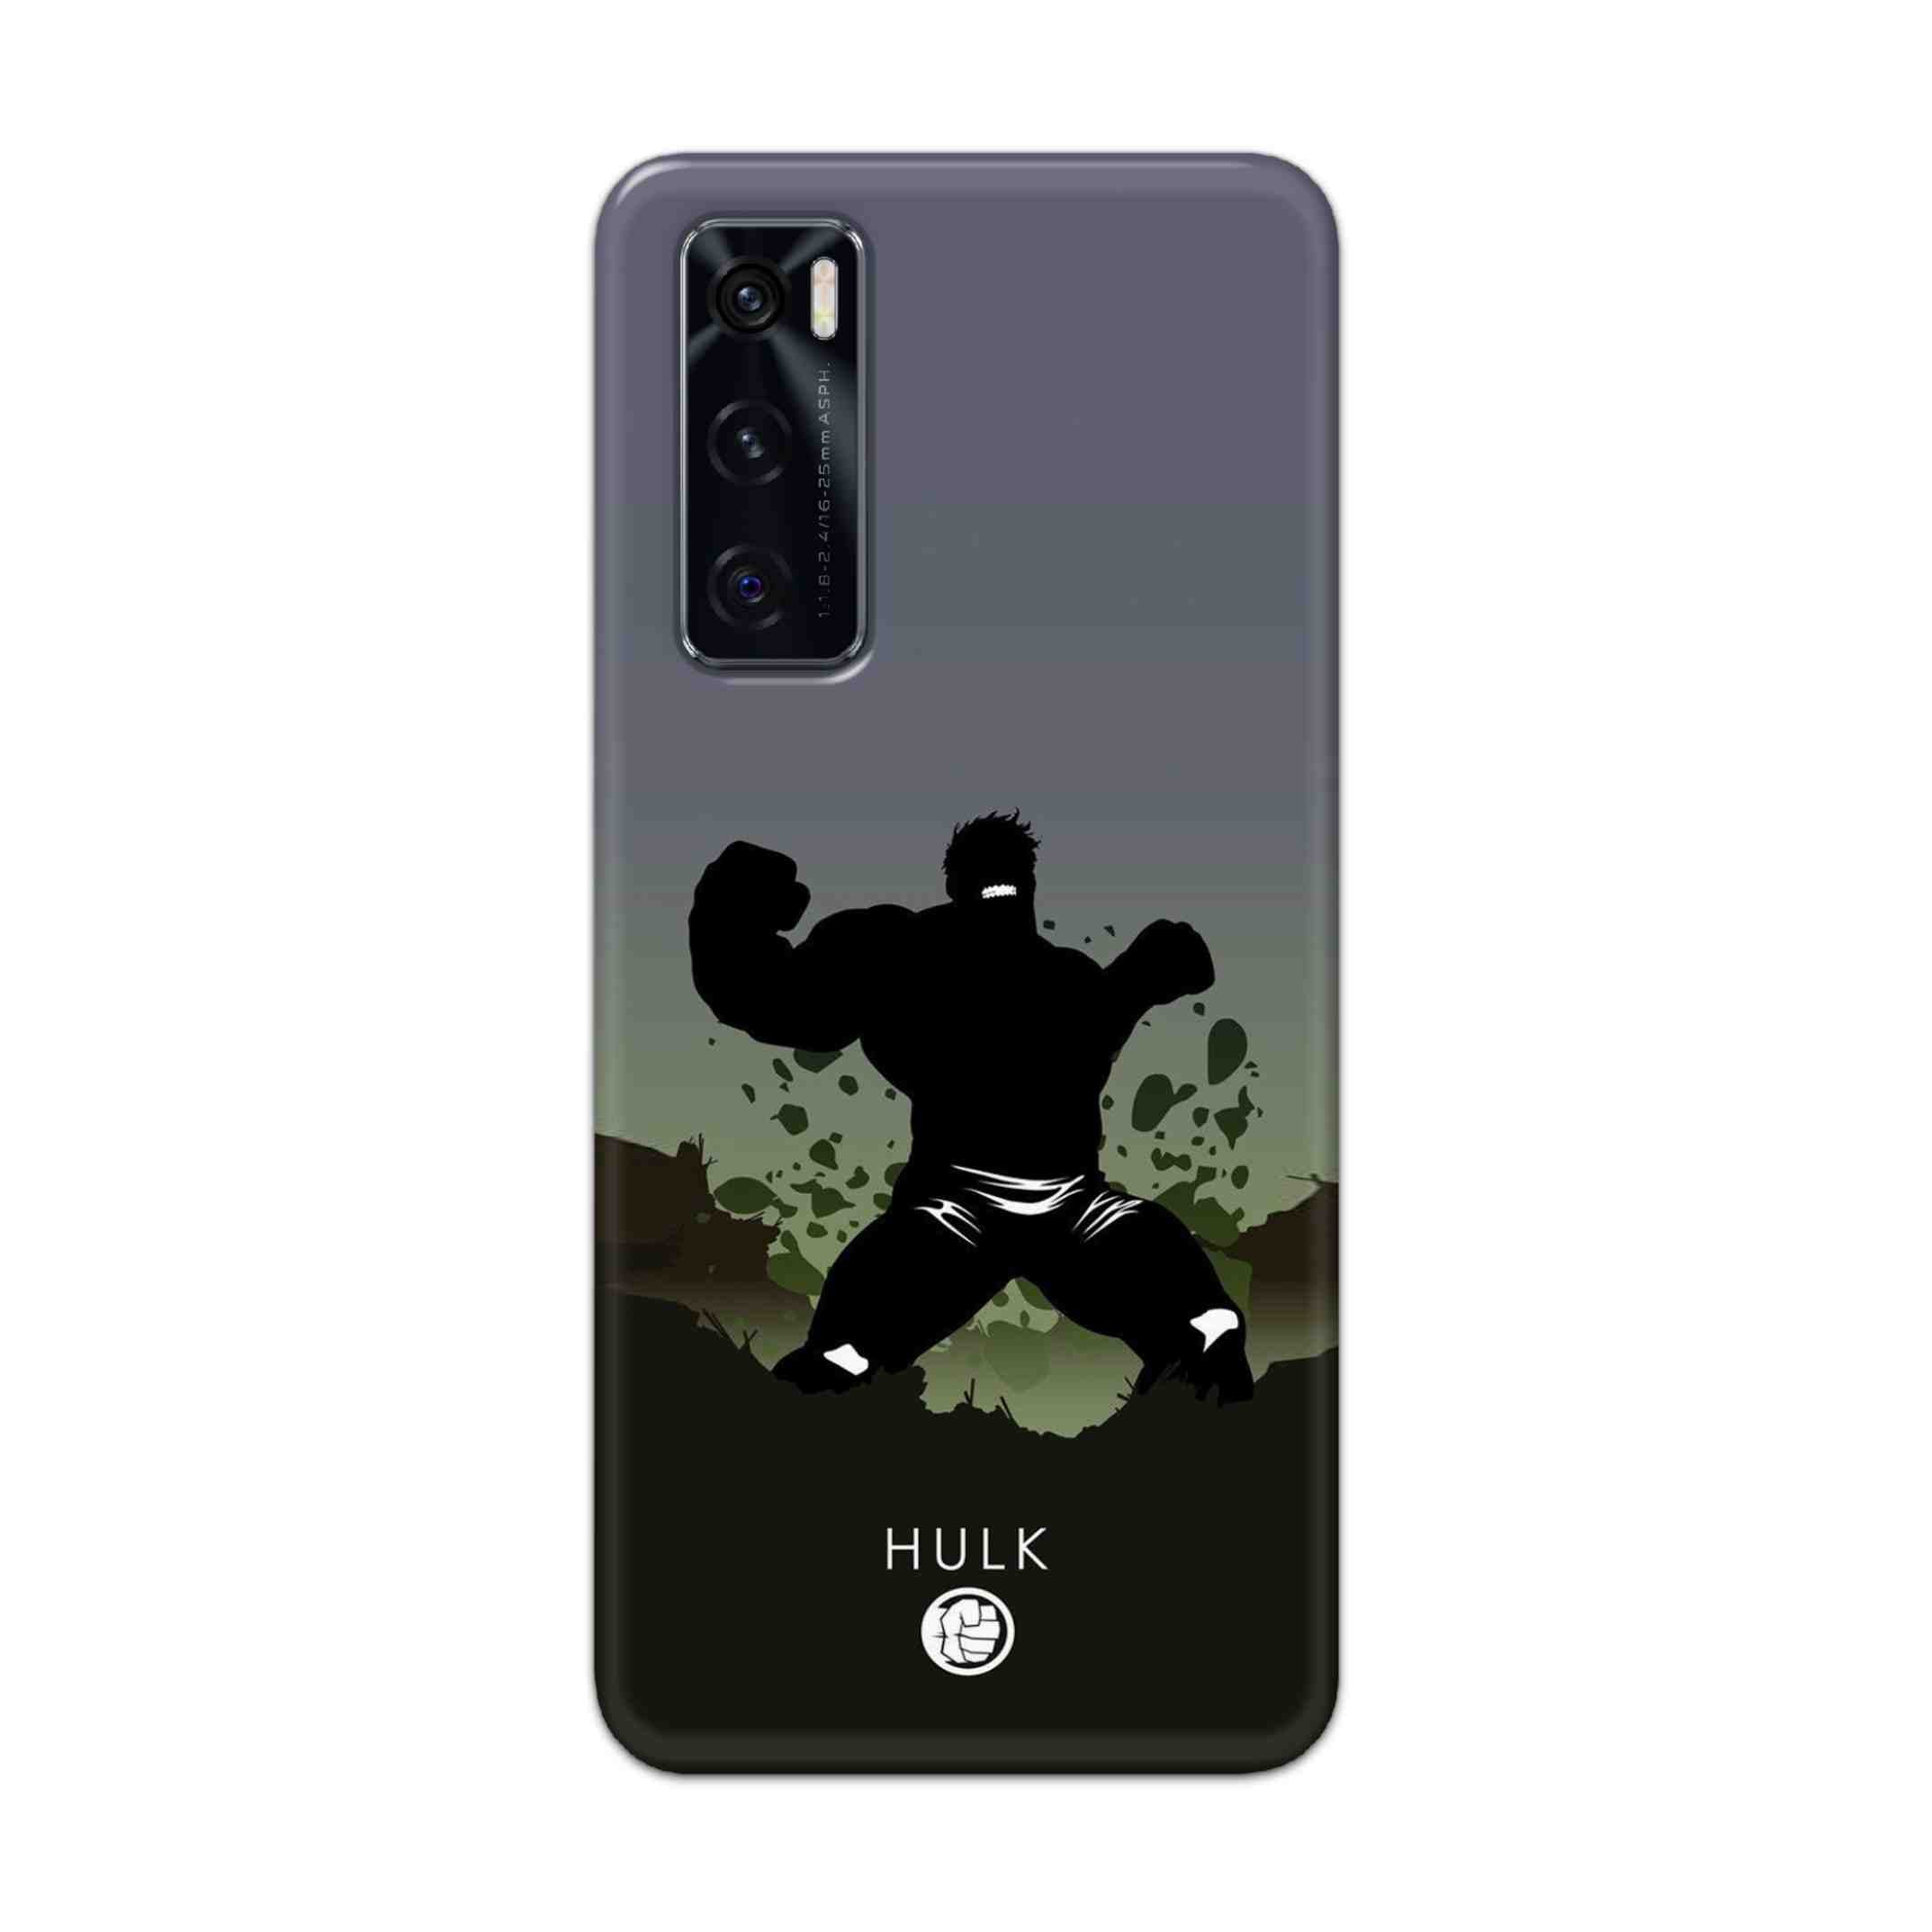 Buy Hulk Drax Hard Back Mobile Phone Case Cover For Vivo V20 SE Online